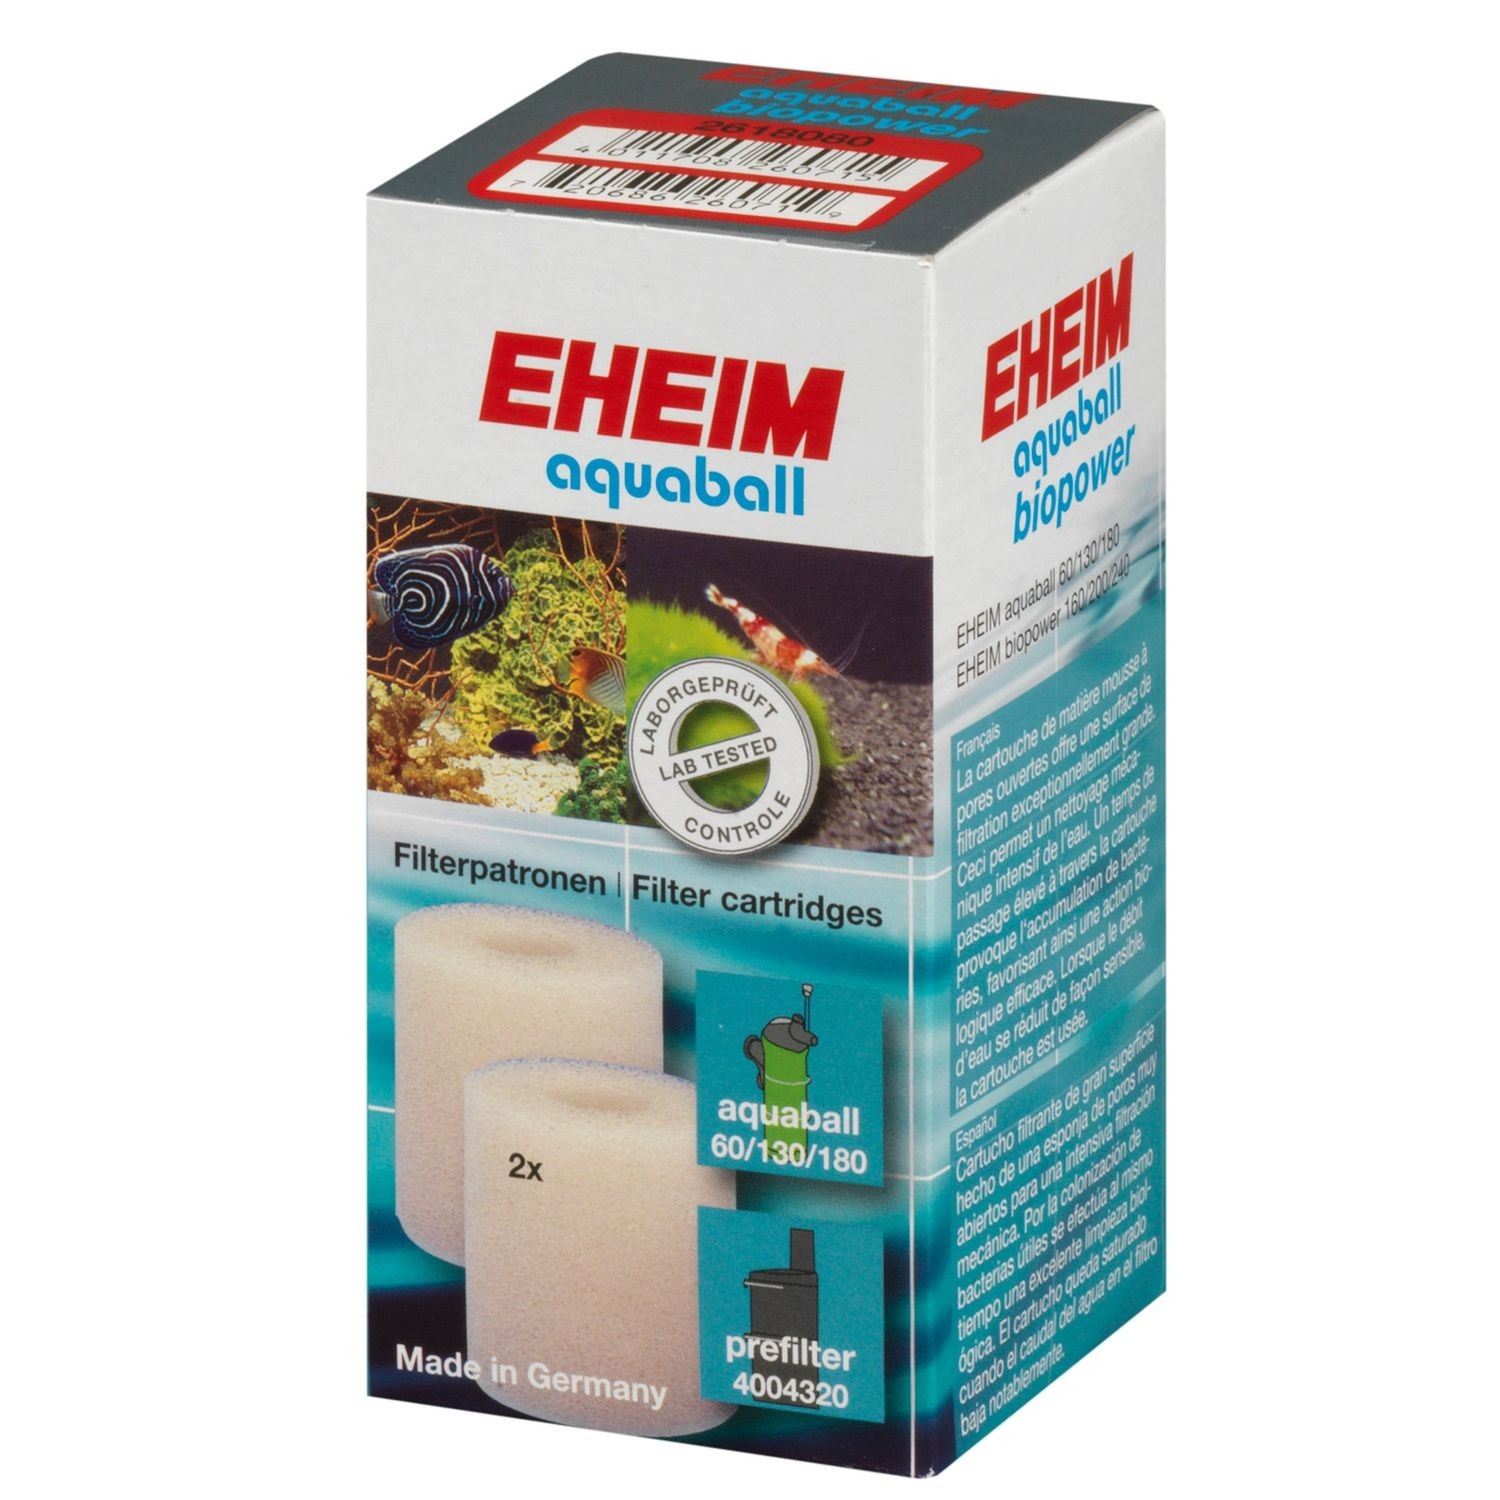 Filterpatrone für EHEIM Aquaball 60/130/180 und Biopower 160/200/240 Filter